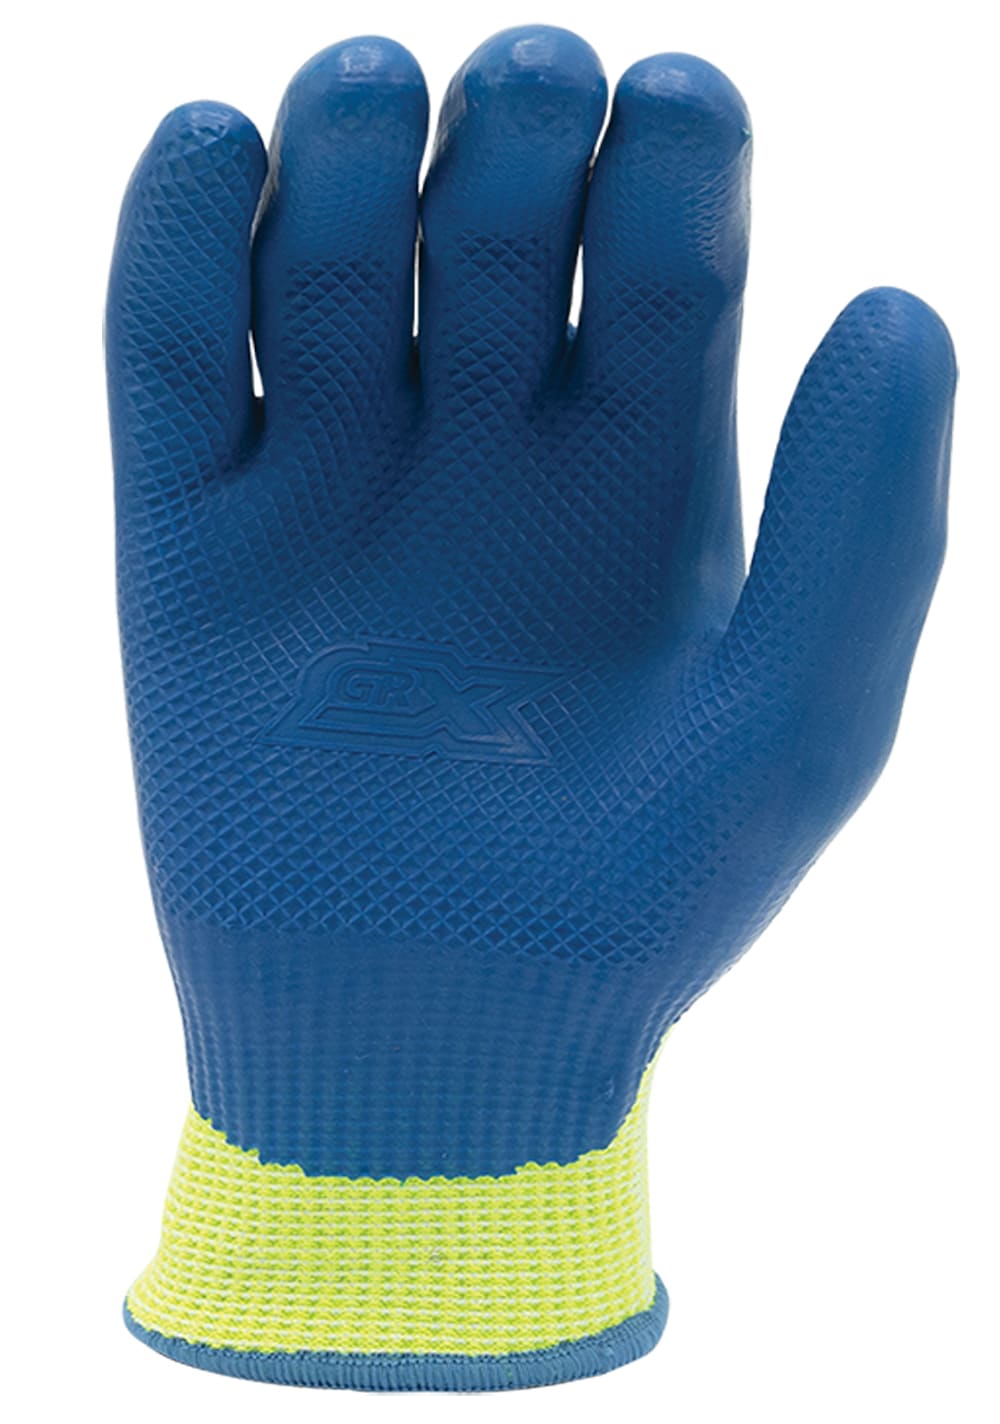 GRX Gloves  Beaverton OR